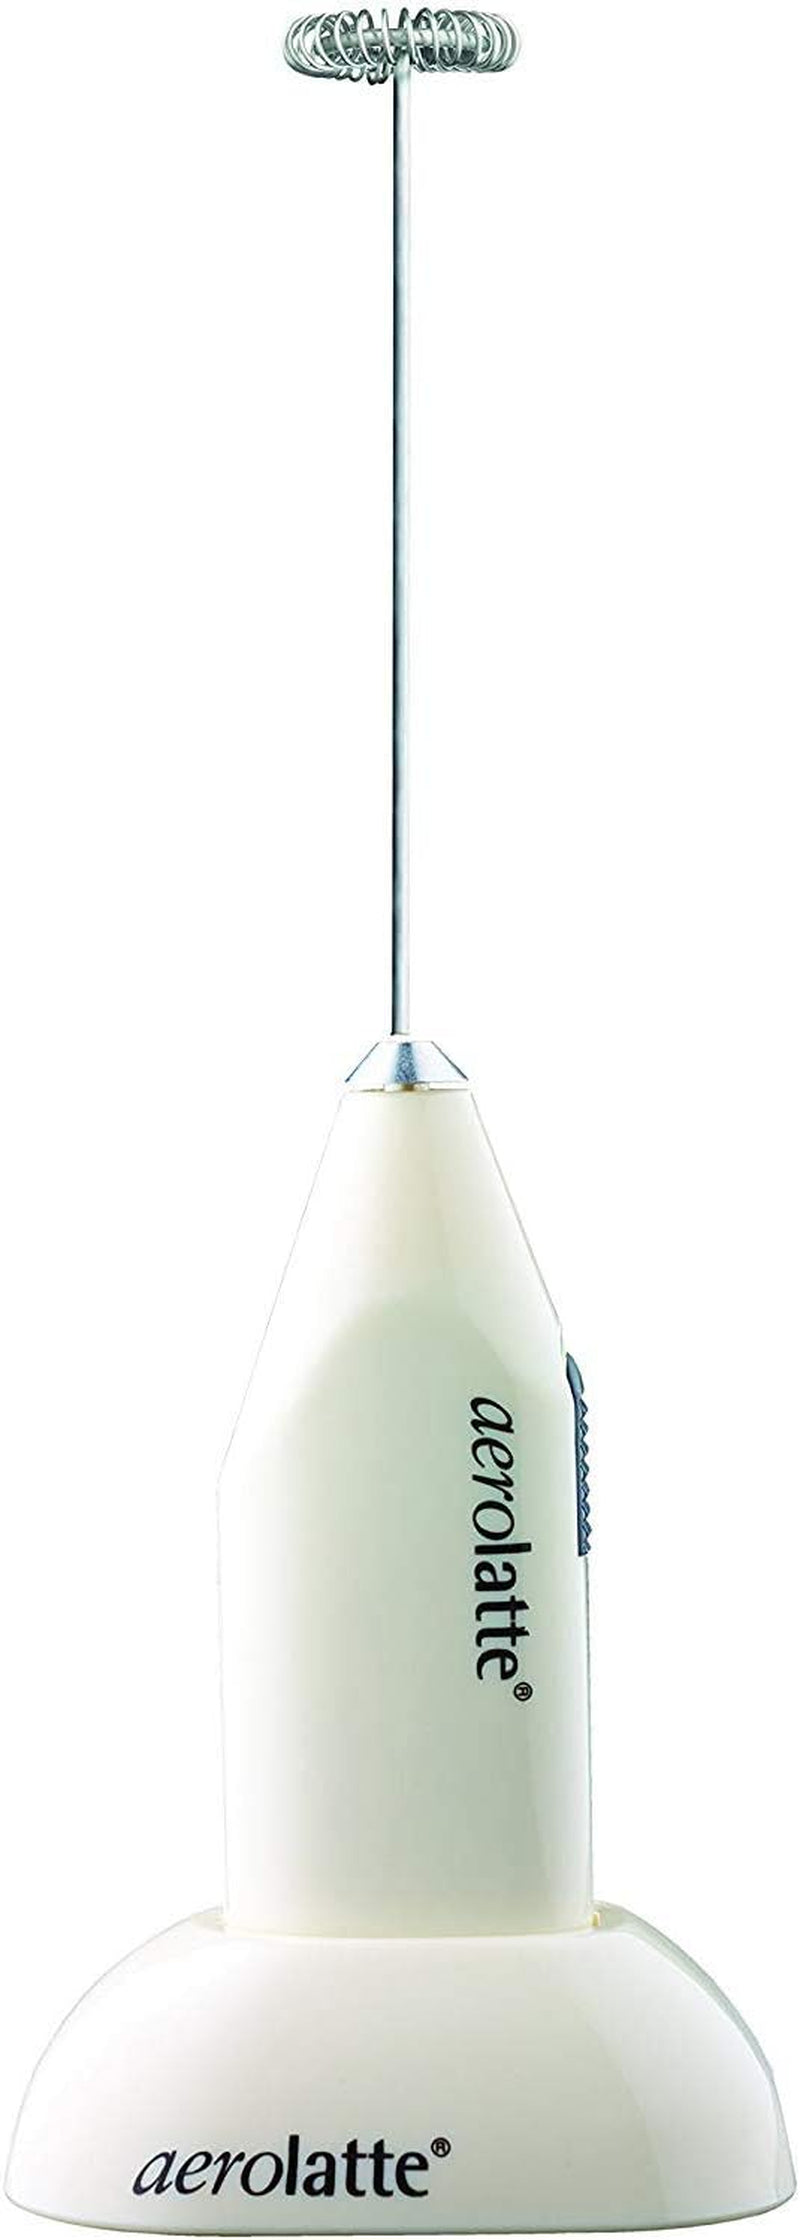 Aerolatte Essentials Steam-Free Milk Frother, Black